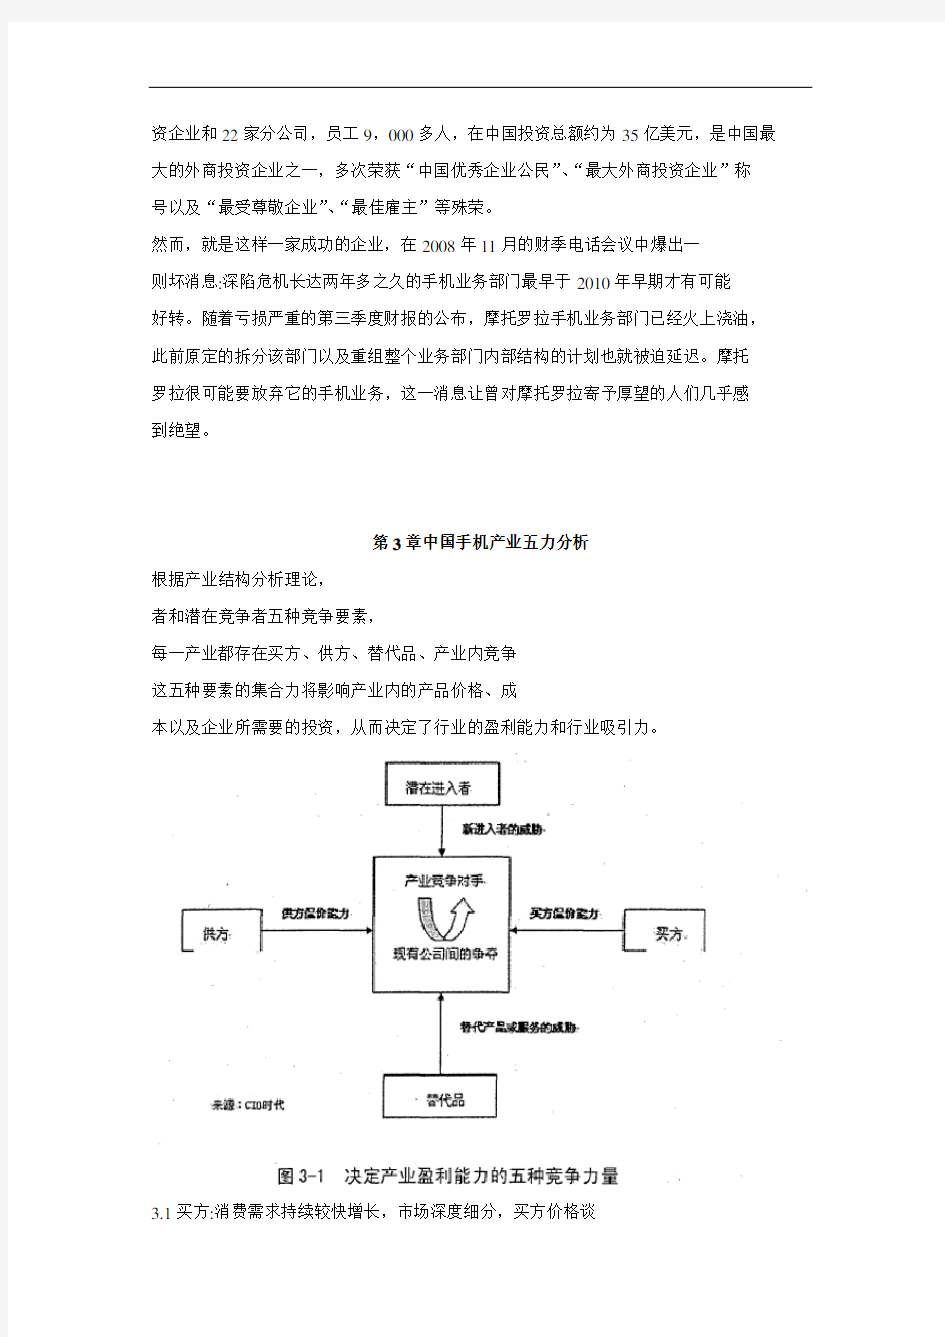 摩托罗拉手机中国竞争战略分析